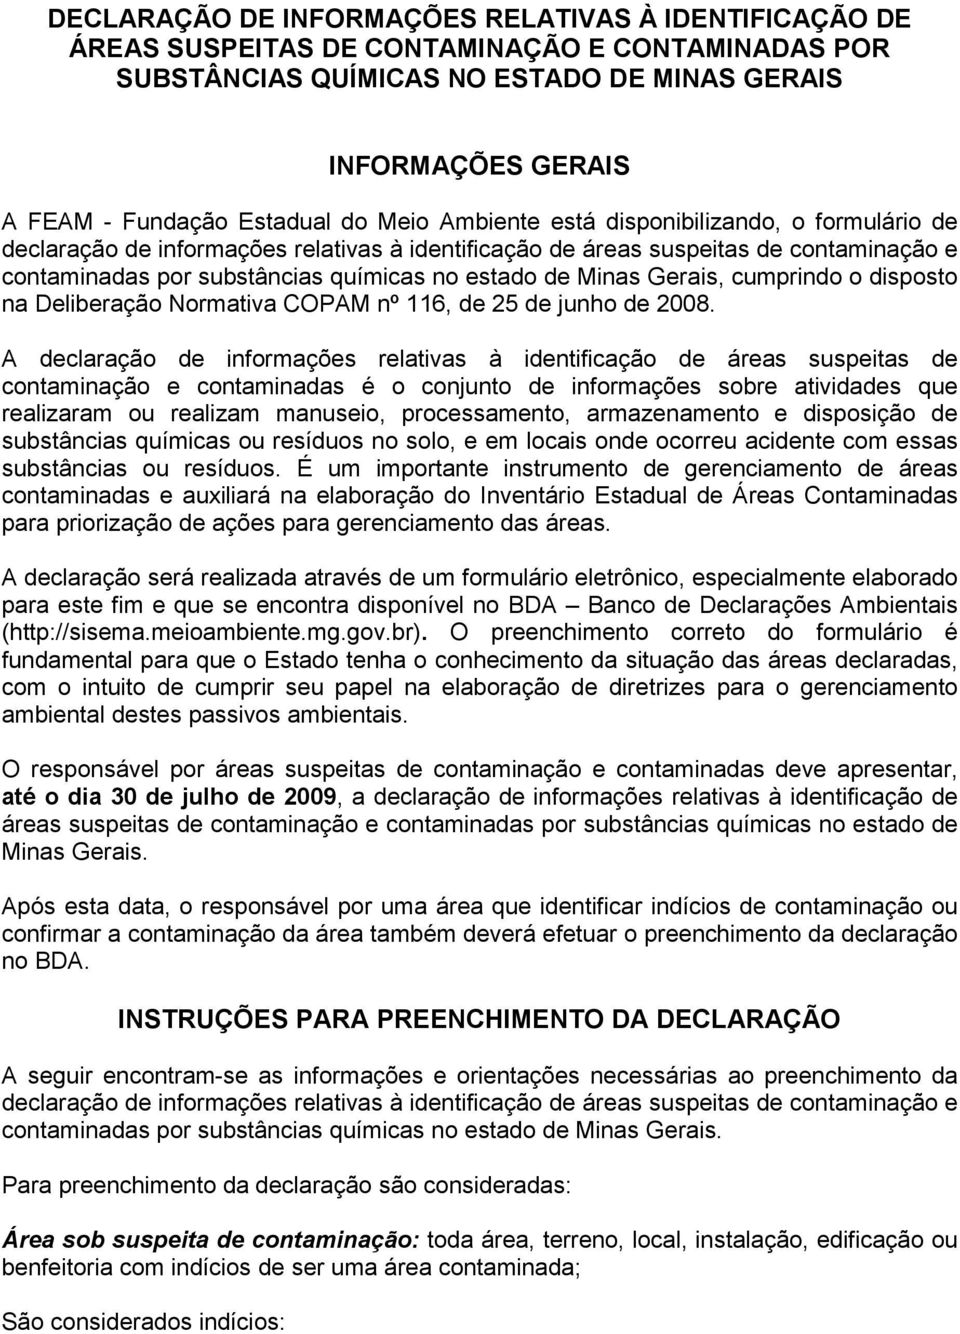 Minas Gerais, cumprindo o disposto na Deliberação Normativa COPAM nº 116, de 25 de junho de 2008.